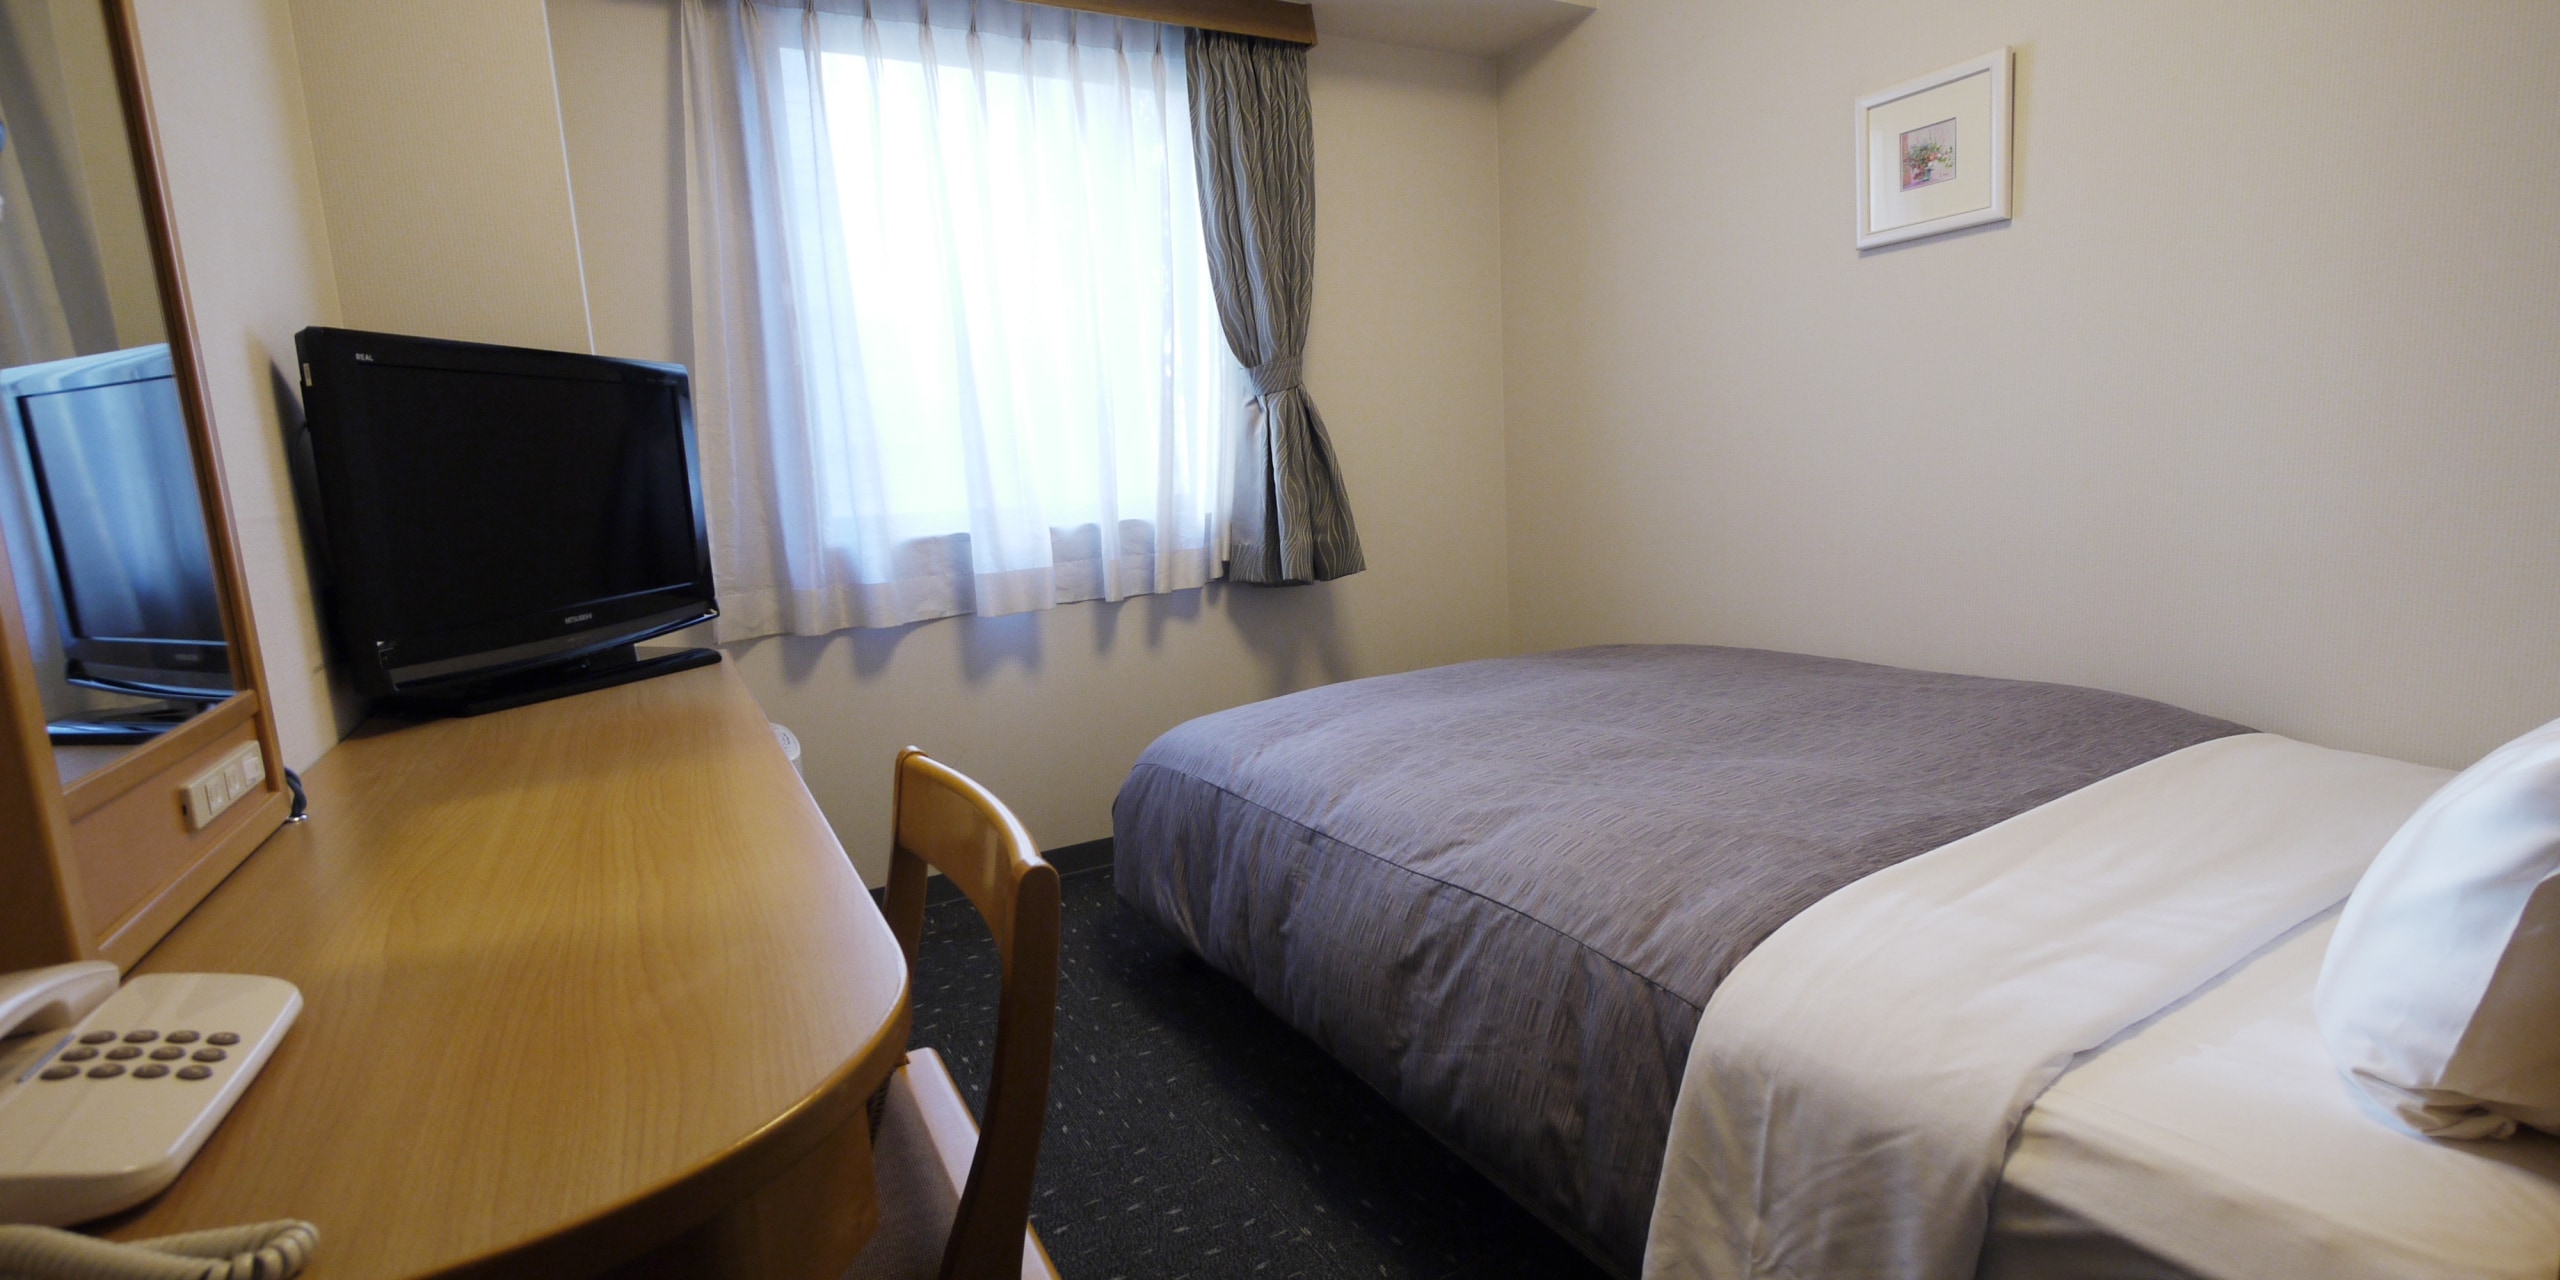 Standard single room ◇ 140 cm wide! Monopolize a big bed! !!